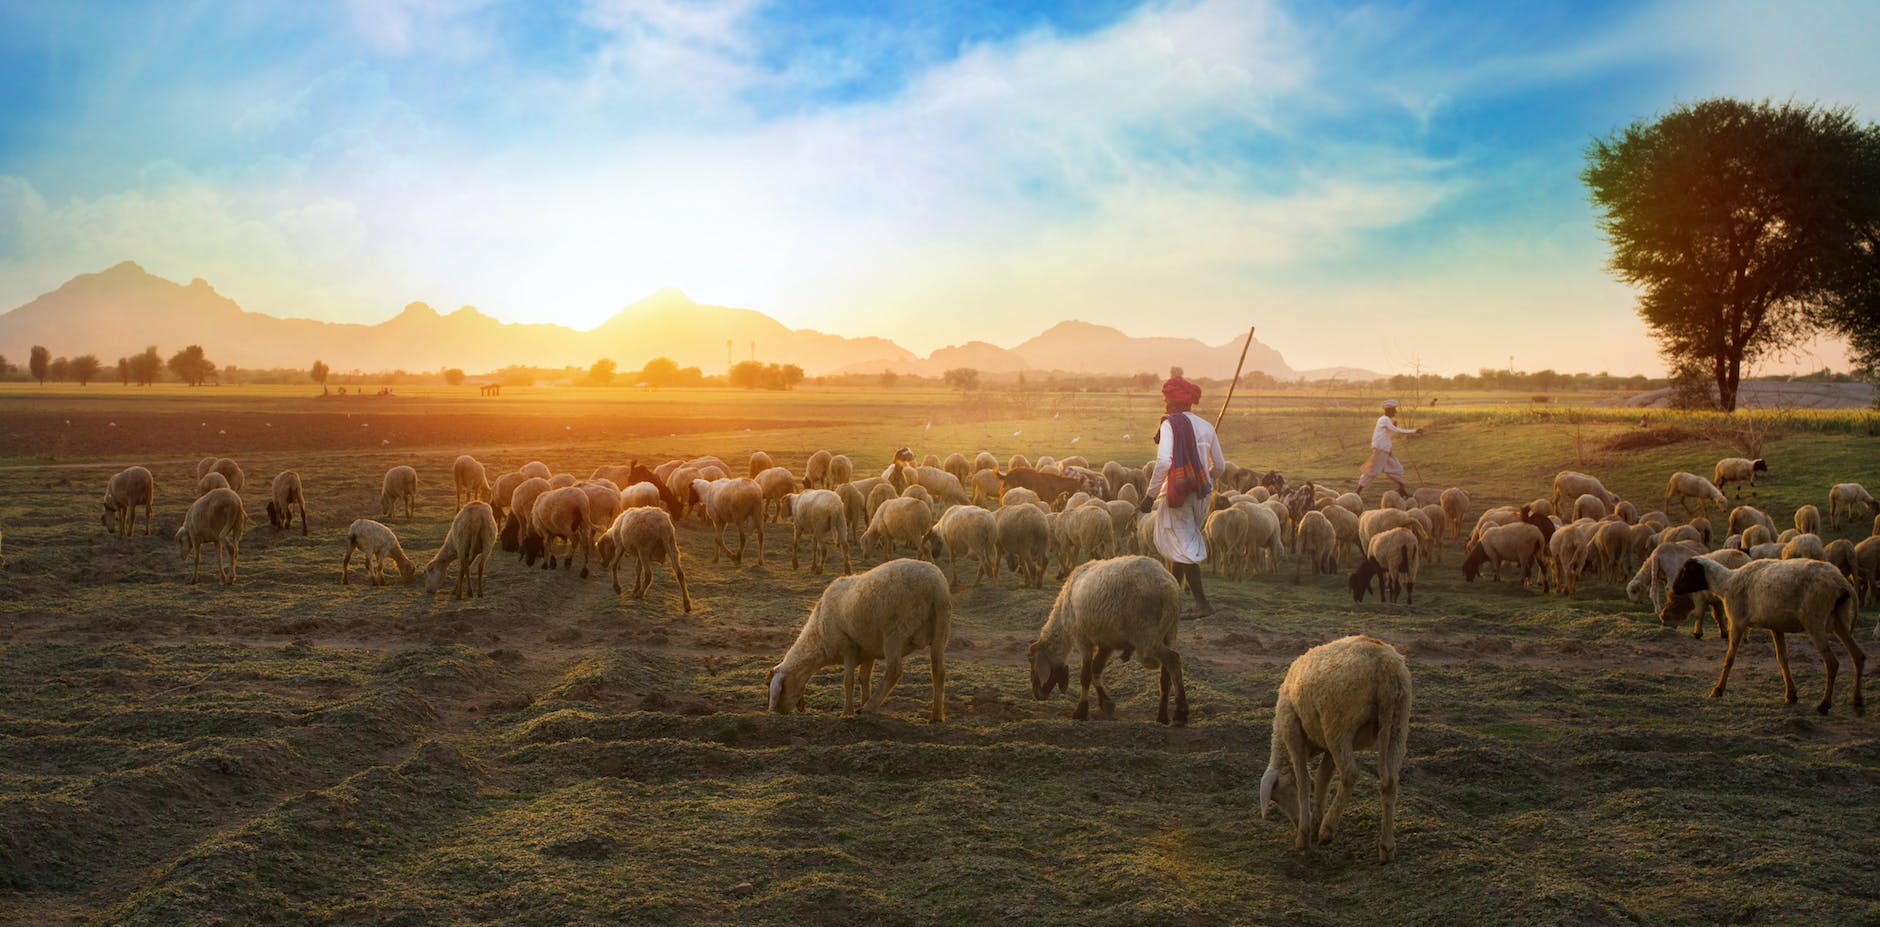 white sheep on farm with shepherds